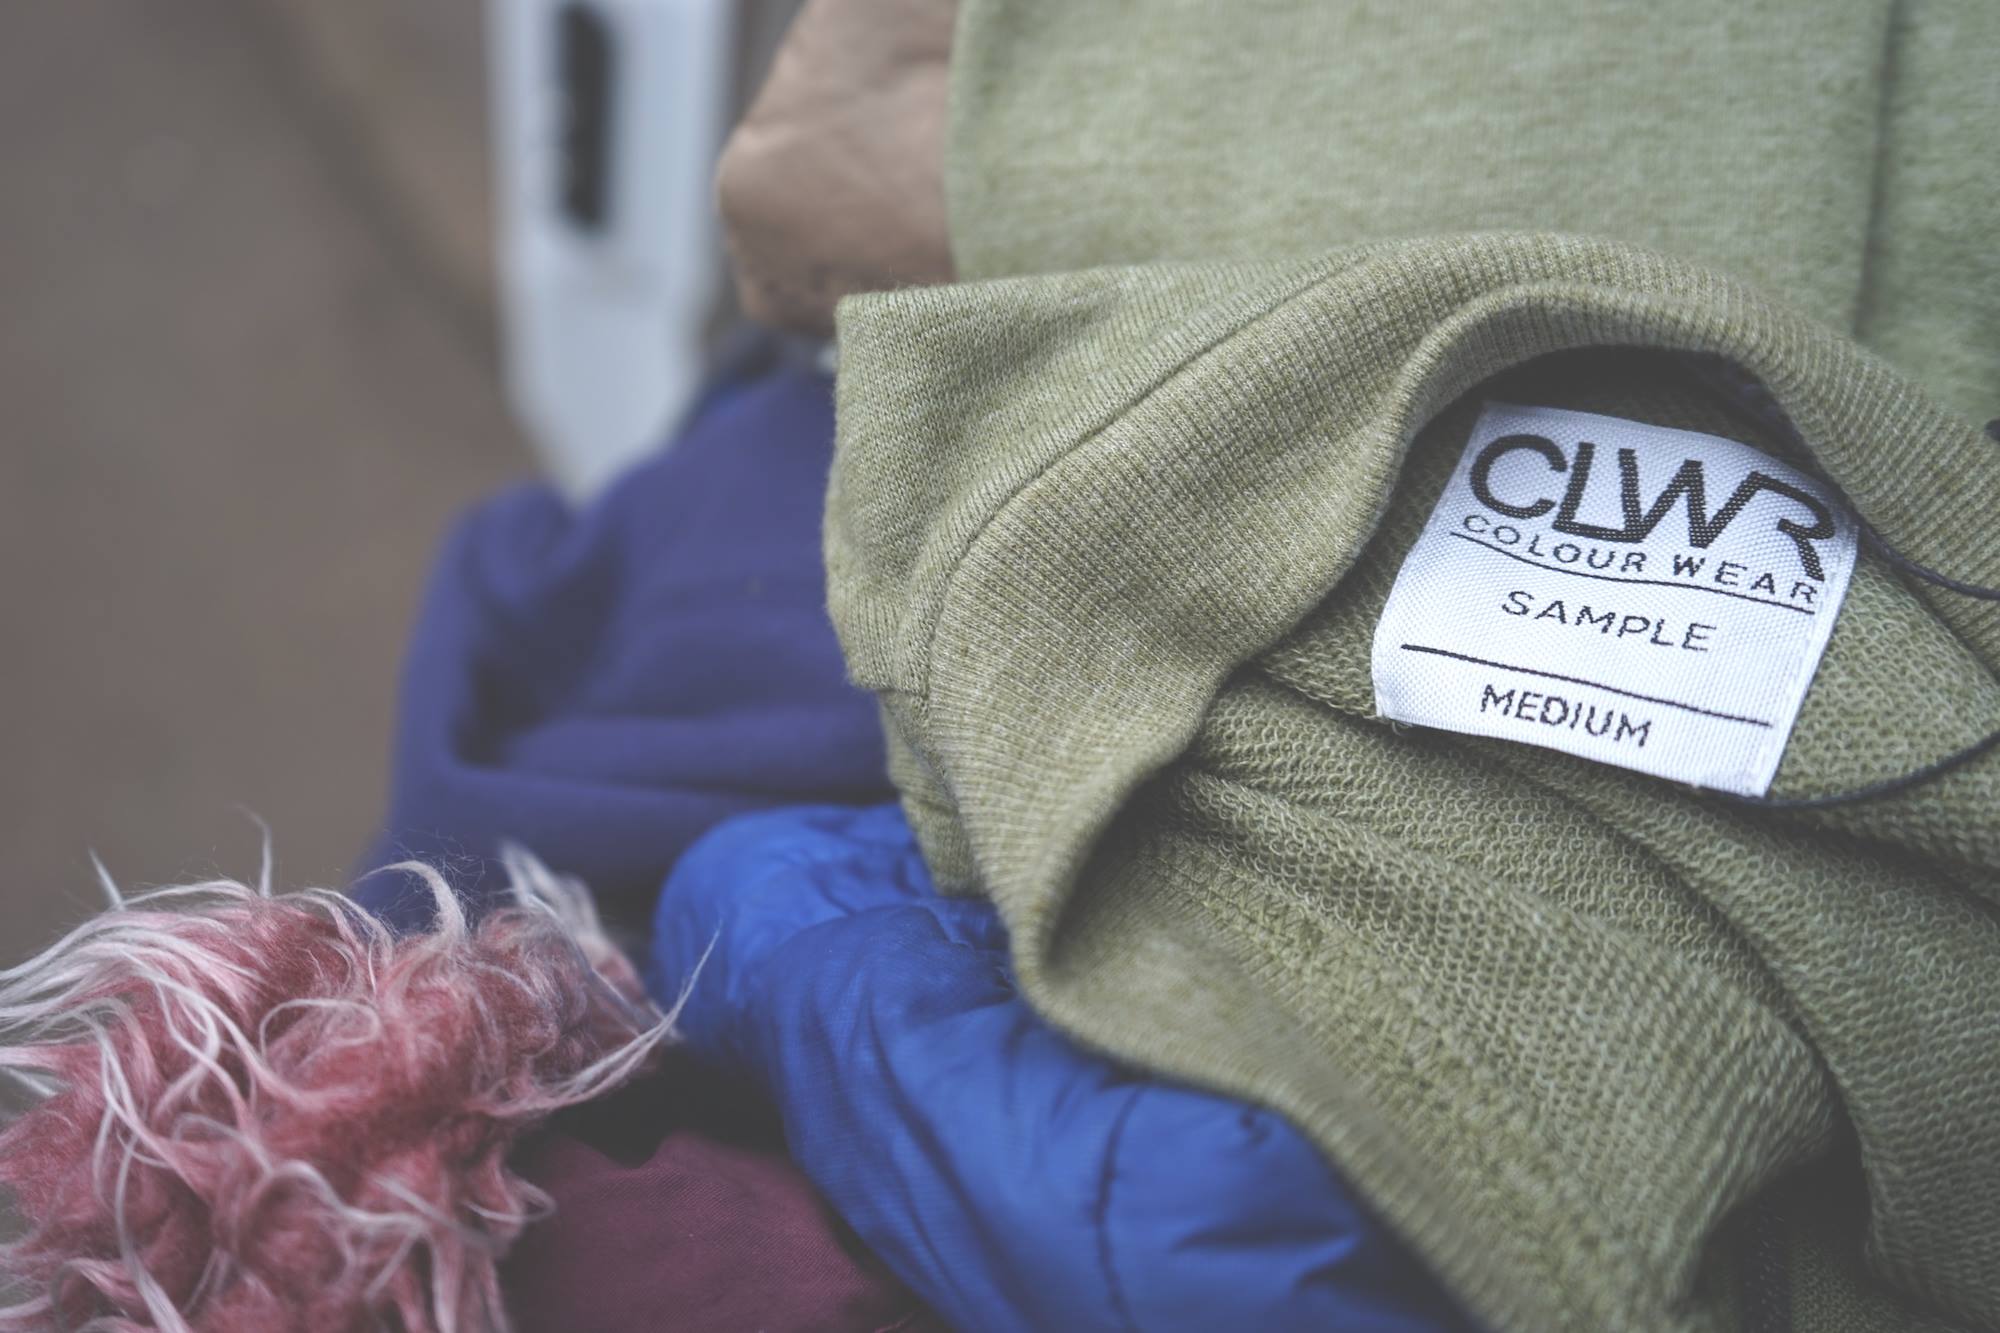 Rézolog, expert de la logistique dans la région d'Annecy, aide l'association Riders for Refugees à transporter les vêtements chauds collectés.